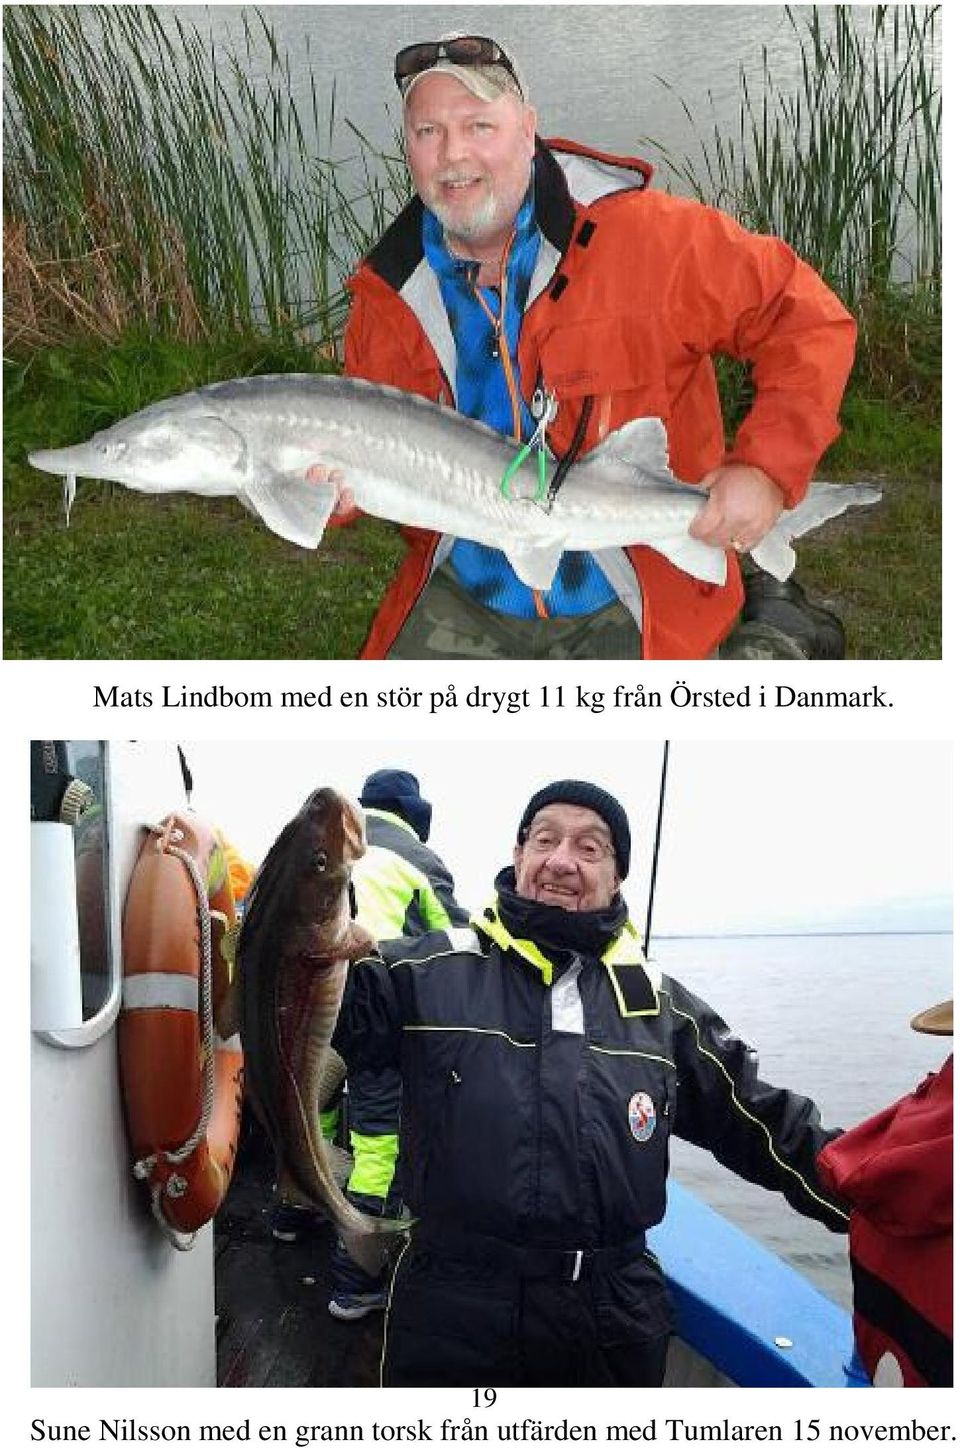 19 Sune Nilsson med en grann torsk